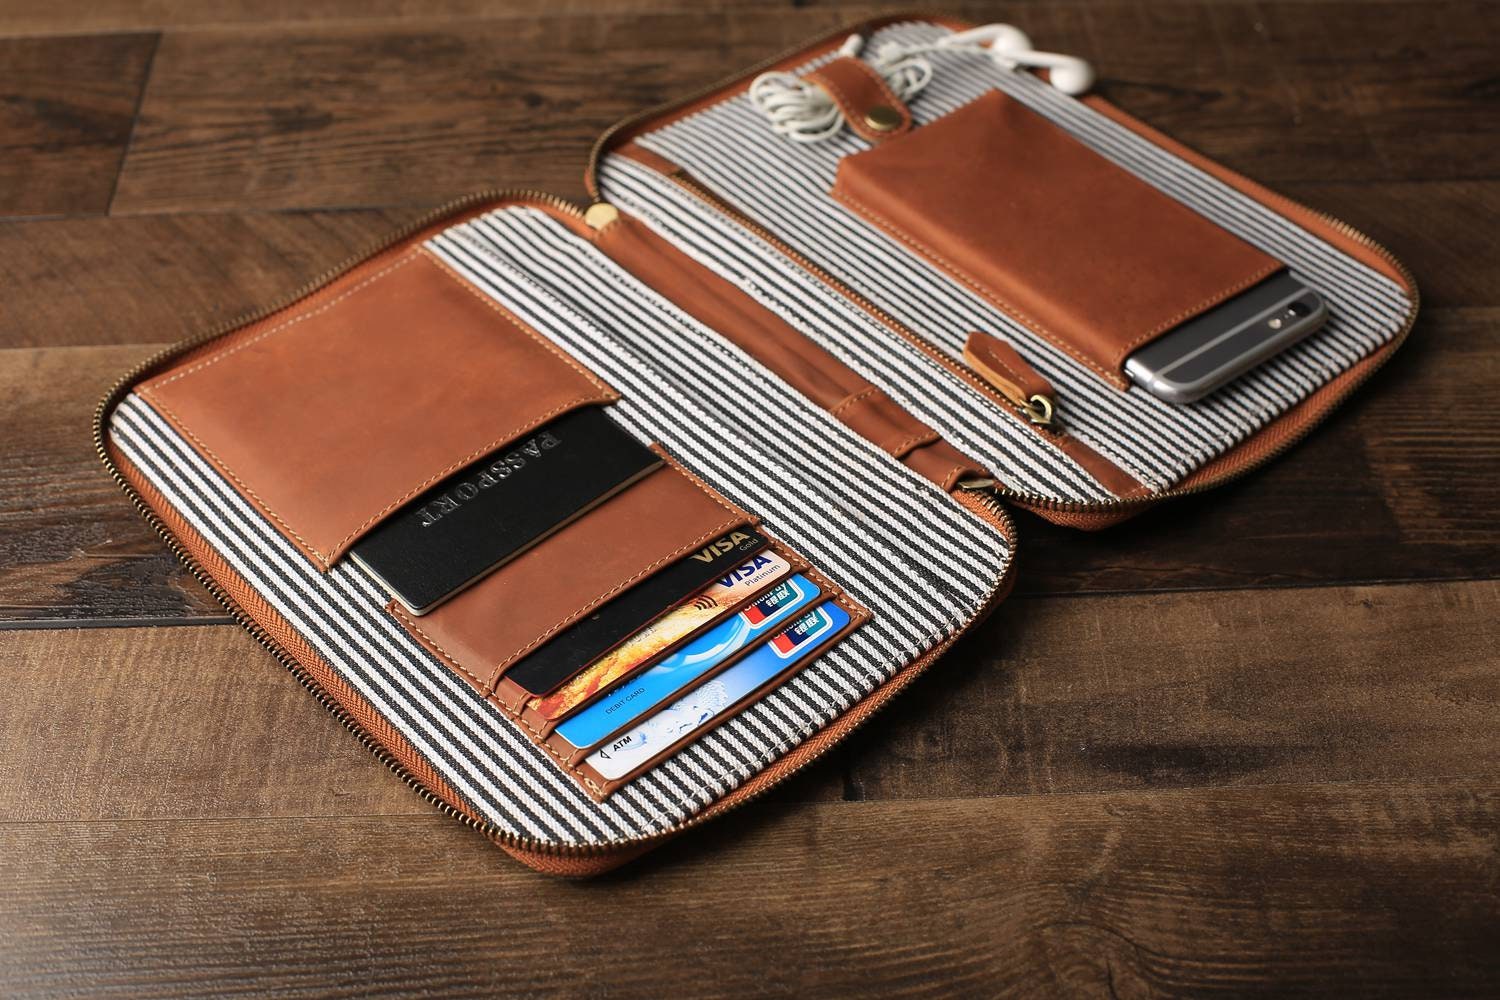 Groomsmen Leather Travel Wallet, Best Gift – JackLeatherStudio